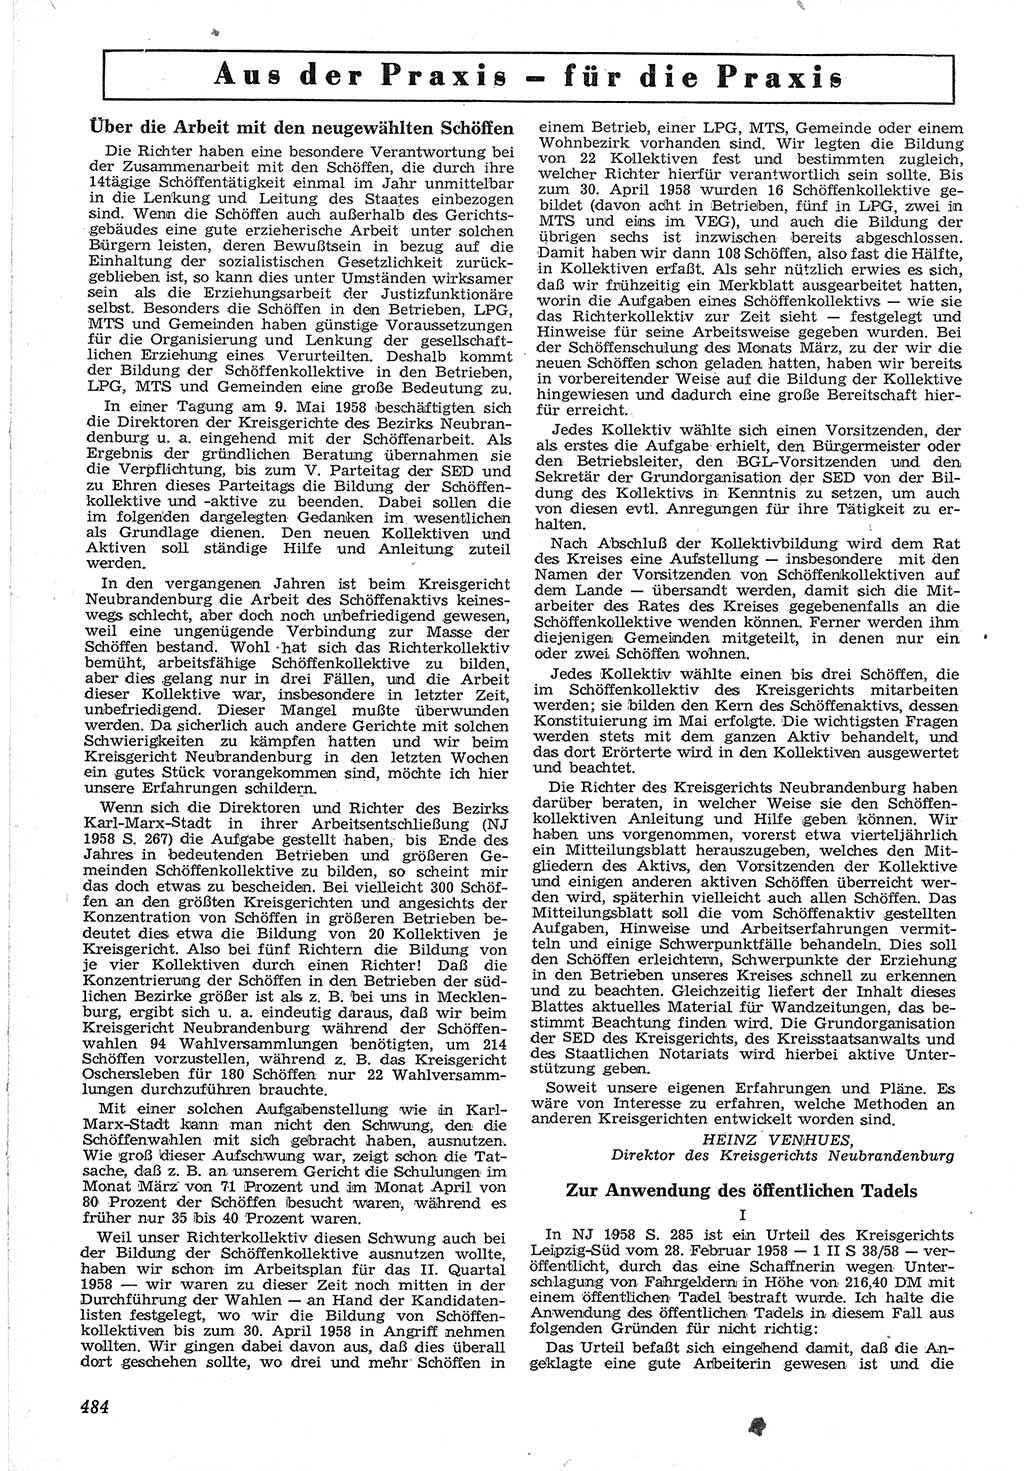 Neue Justiz (NJ), Zeitschrift für Recht und Rechtswissenschaft [Deutsche Demokratische Republik (DDR)], 12. Jahrgang 1958, Seite 484 (NJ DDR 1958, S. 484)